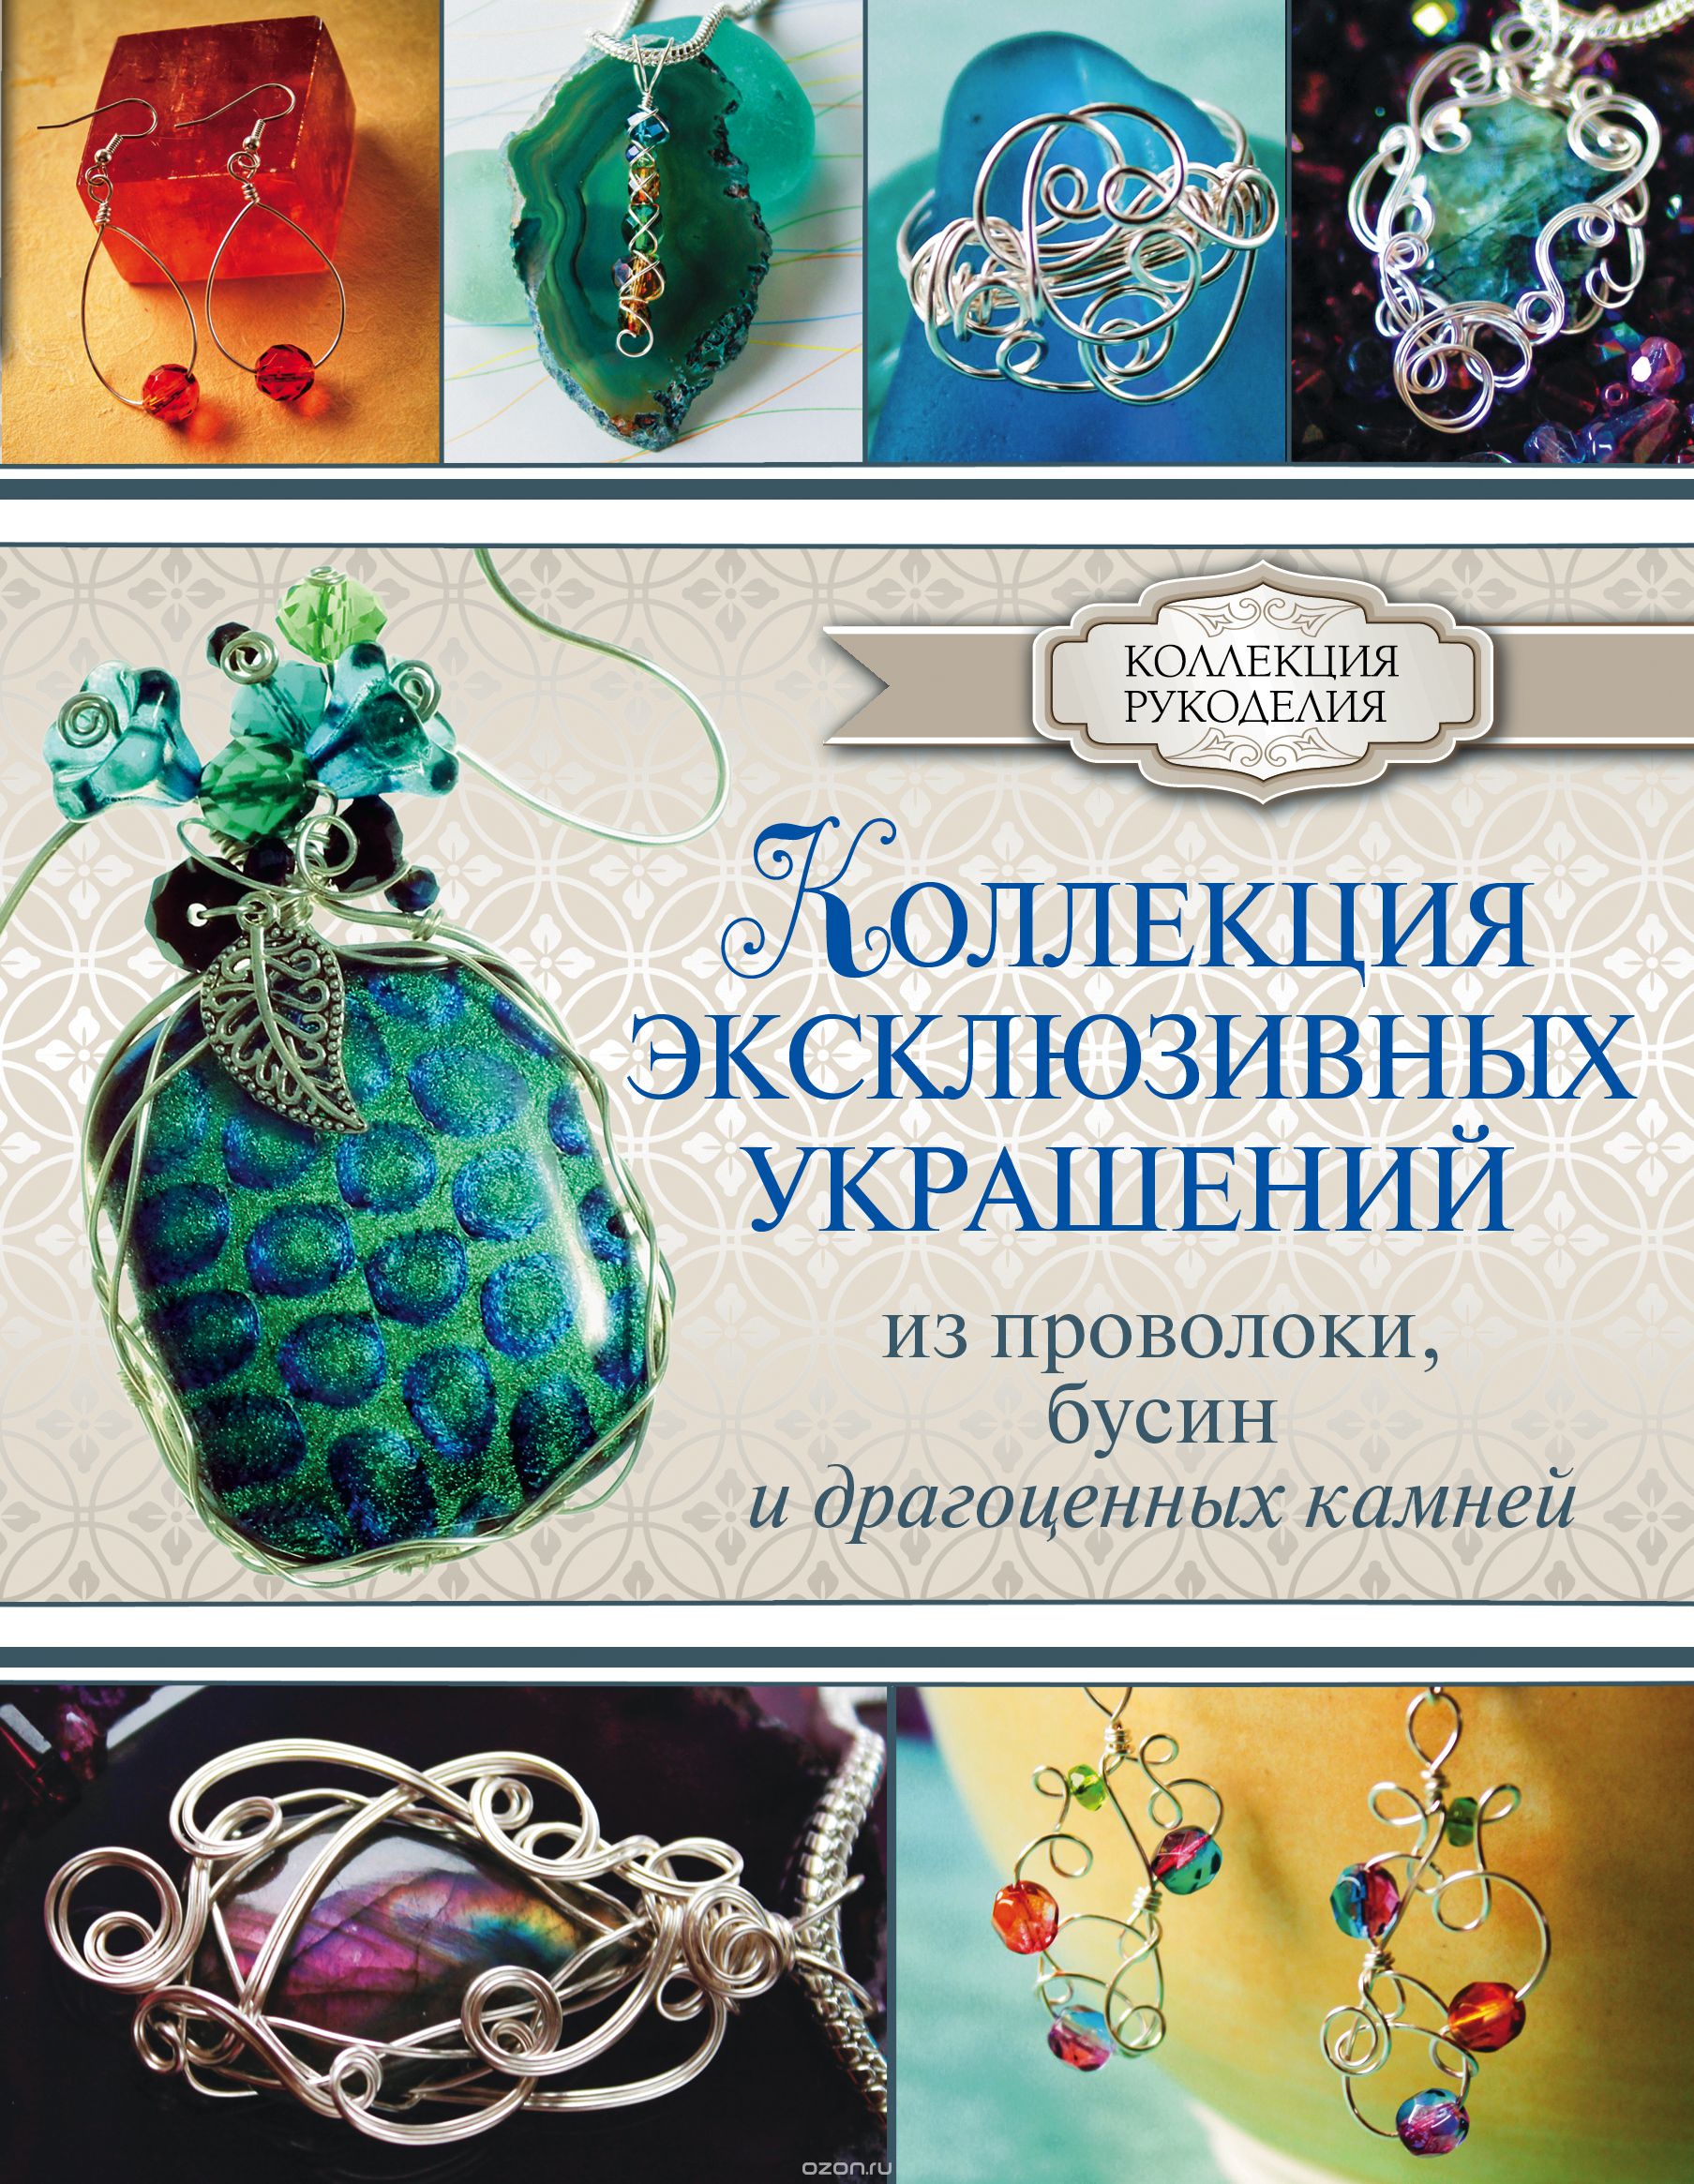 Скачать книгу "Коллекция эксклюзивных украшений из проволоки, бусин и драгоценных камней, Берд Г."